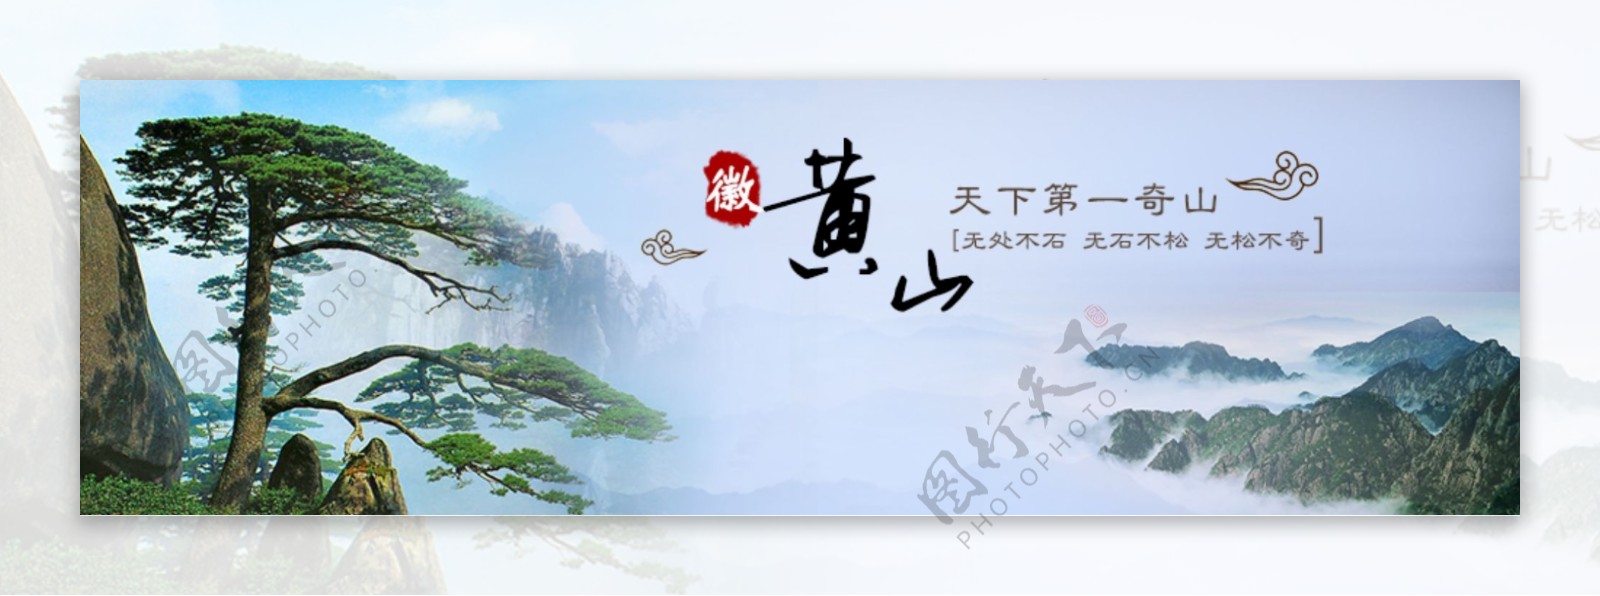 黄山旅游网站banner图片